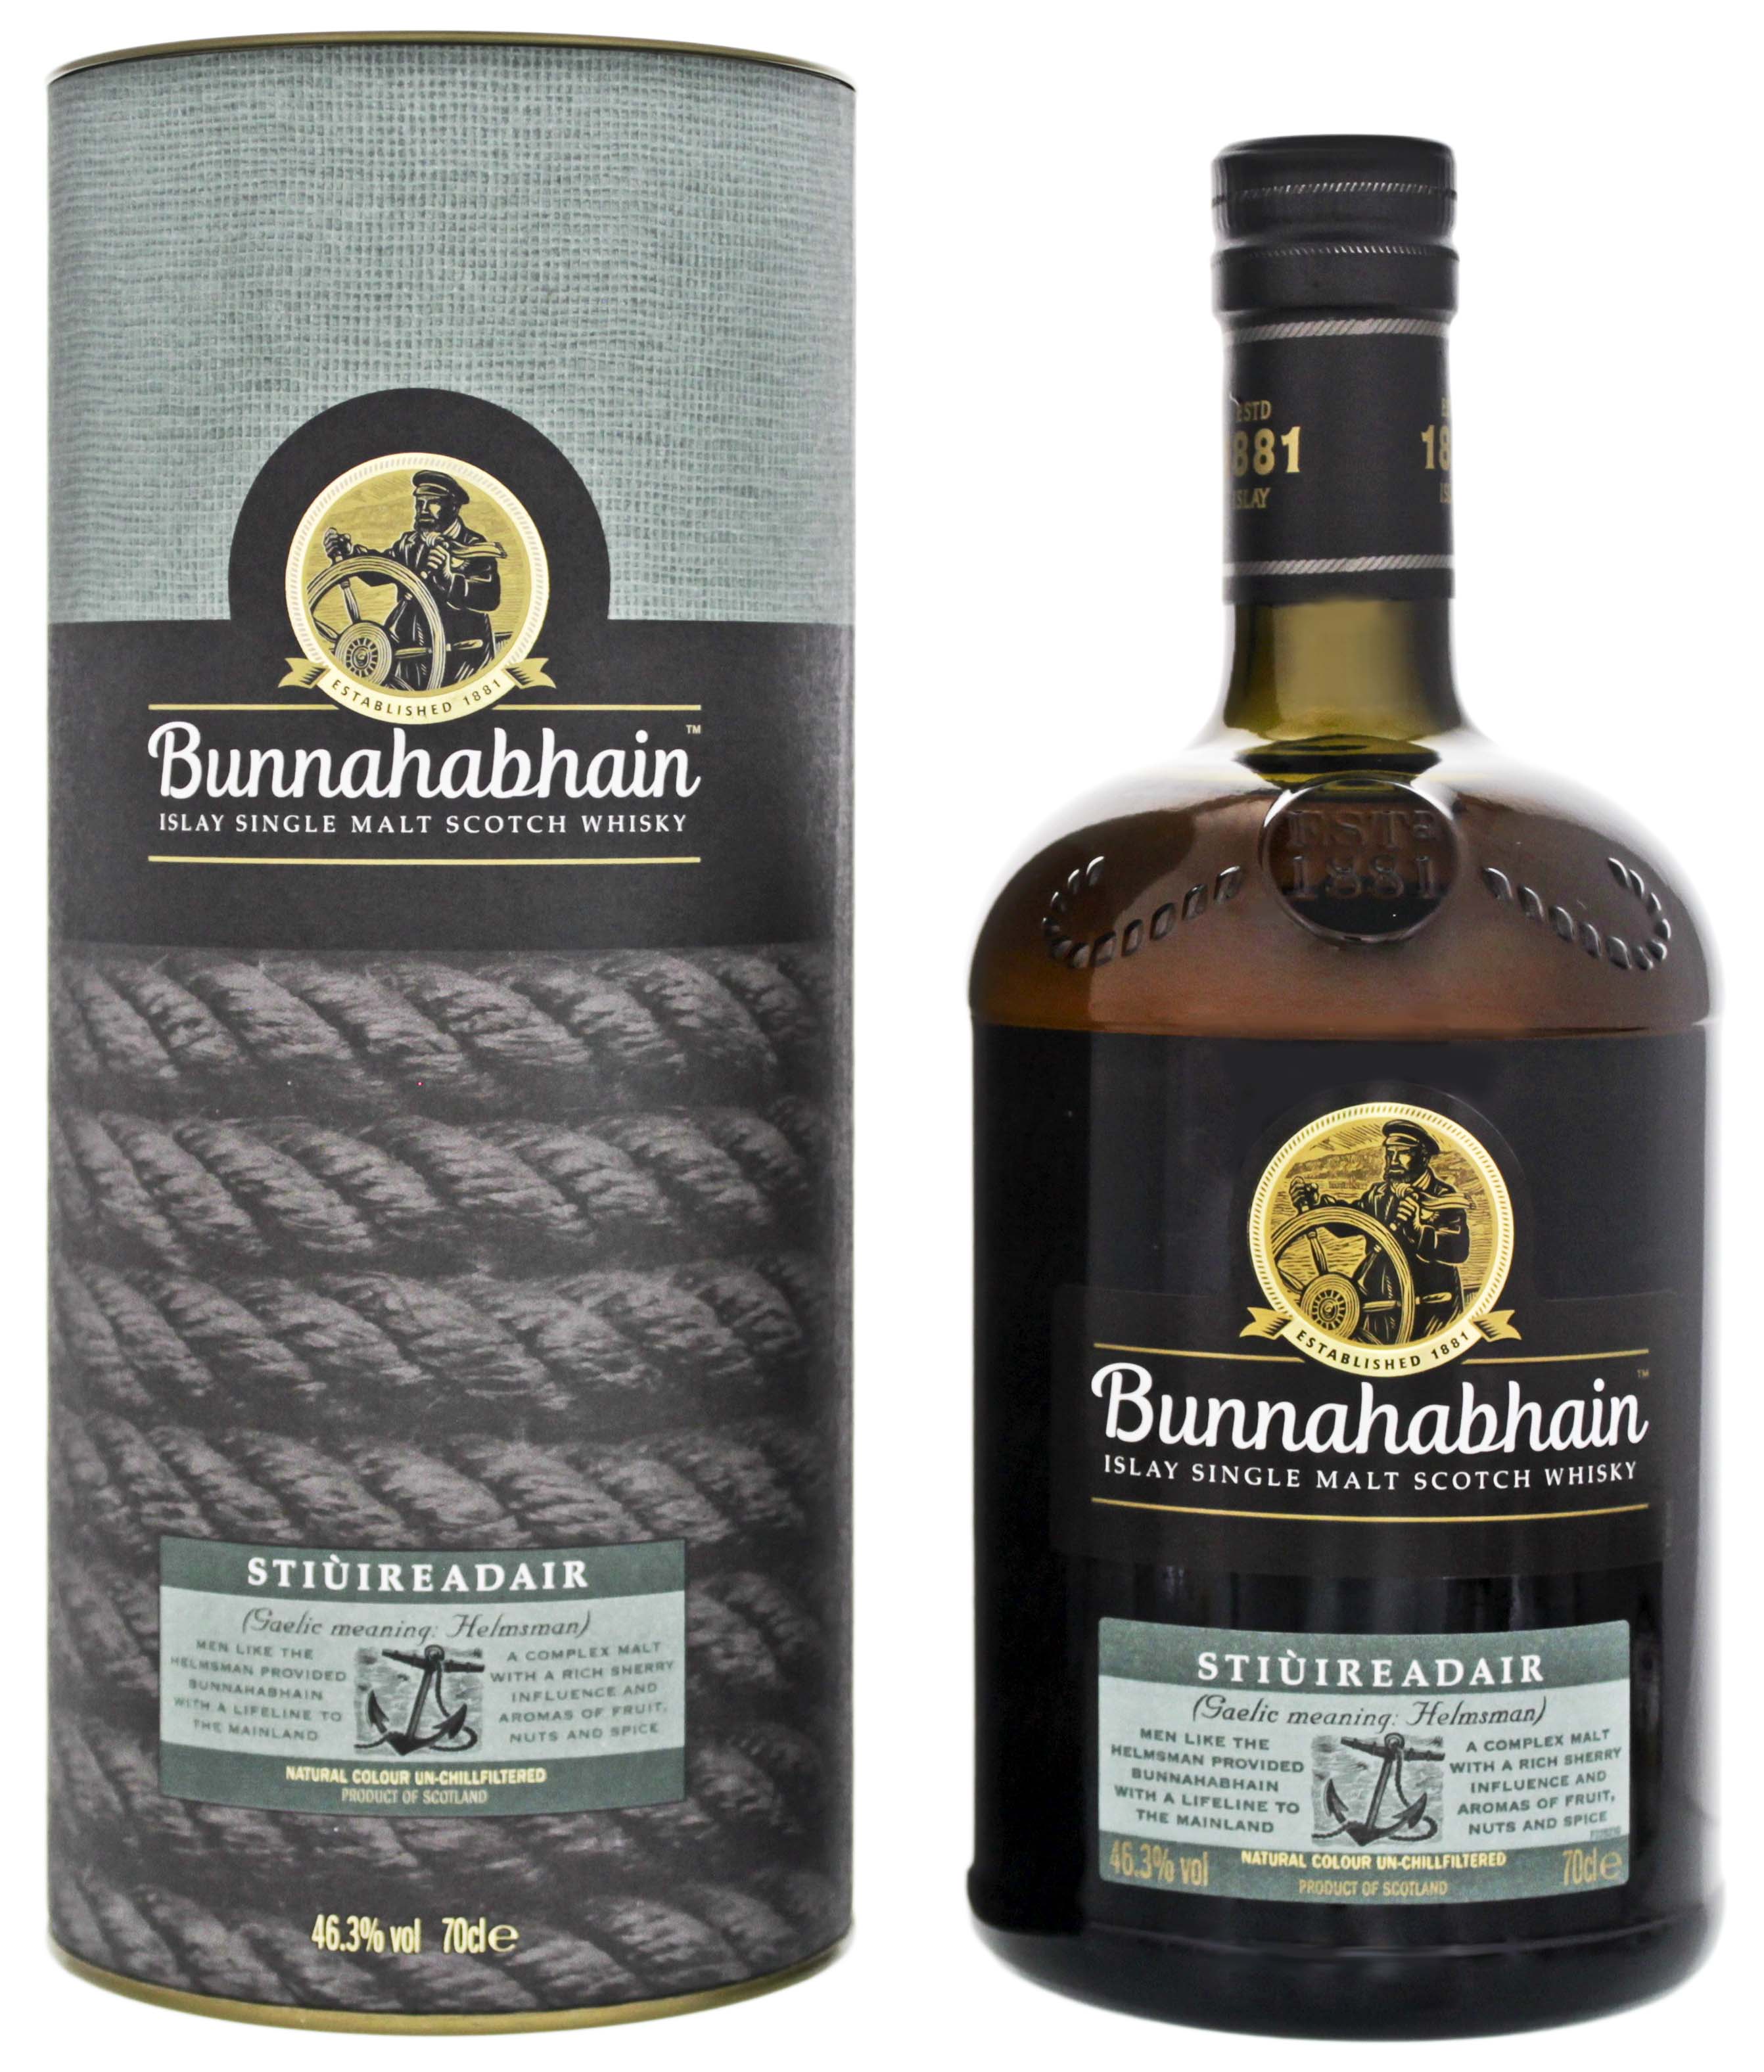 Bunnahabhain Single Malt Whisky Stiùireadair jetzt kaufen im Drinkology  Online Shop ! | Whisky